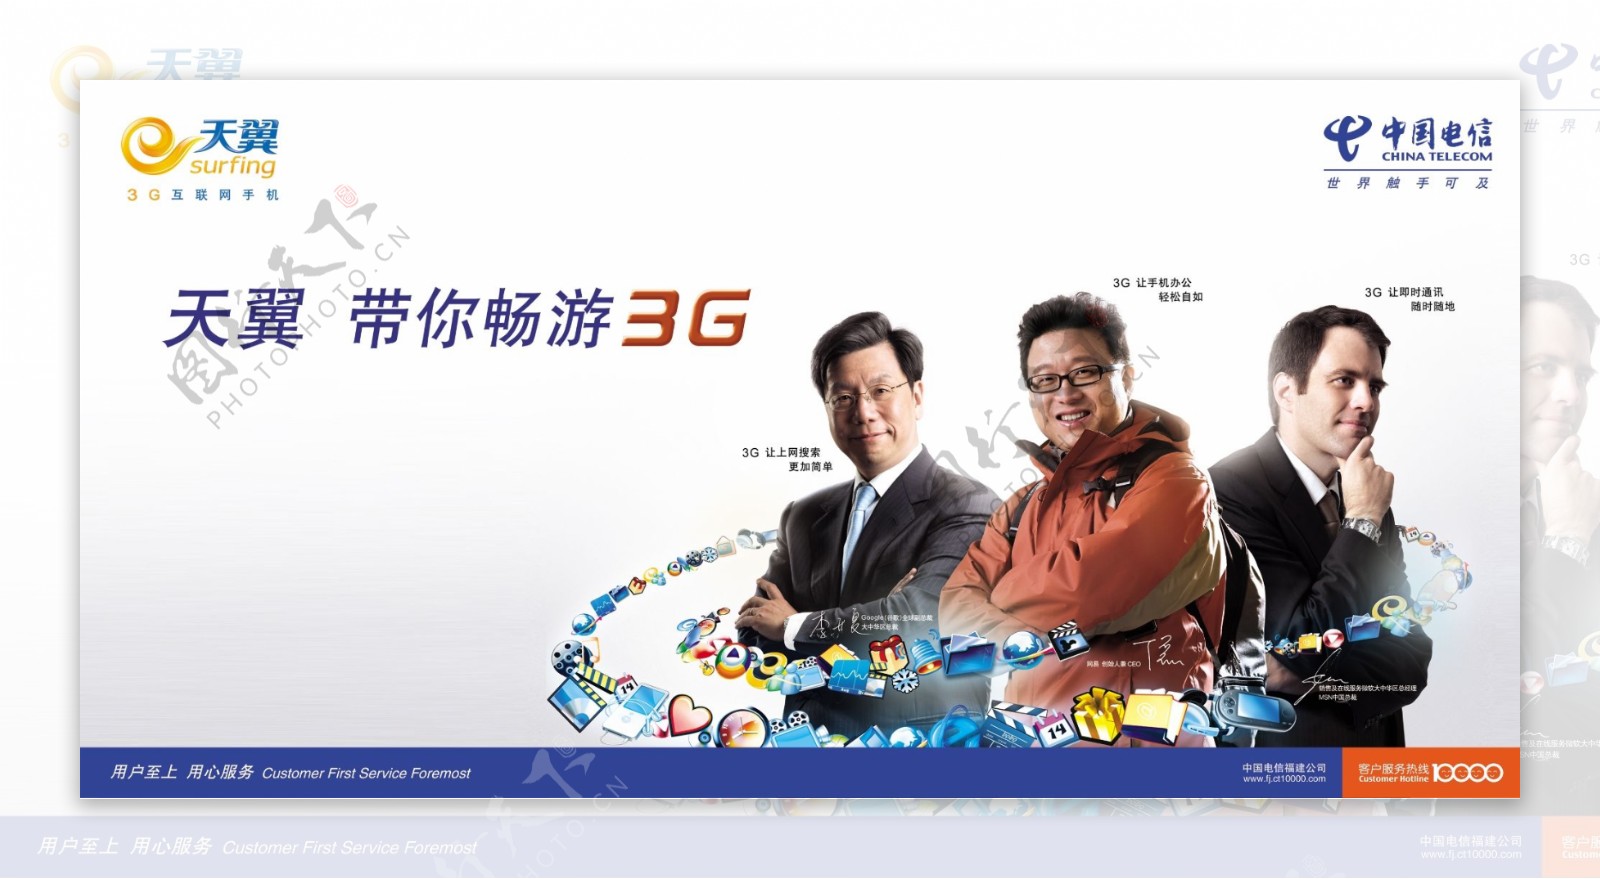 天翼3G网络图片